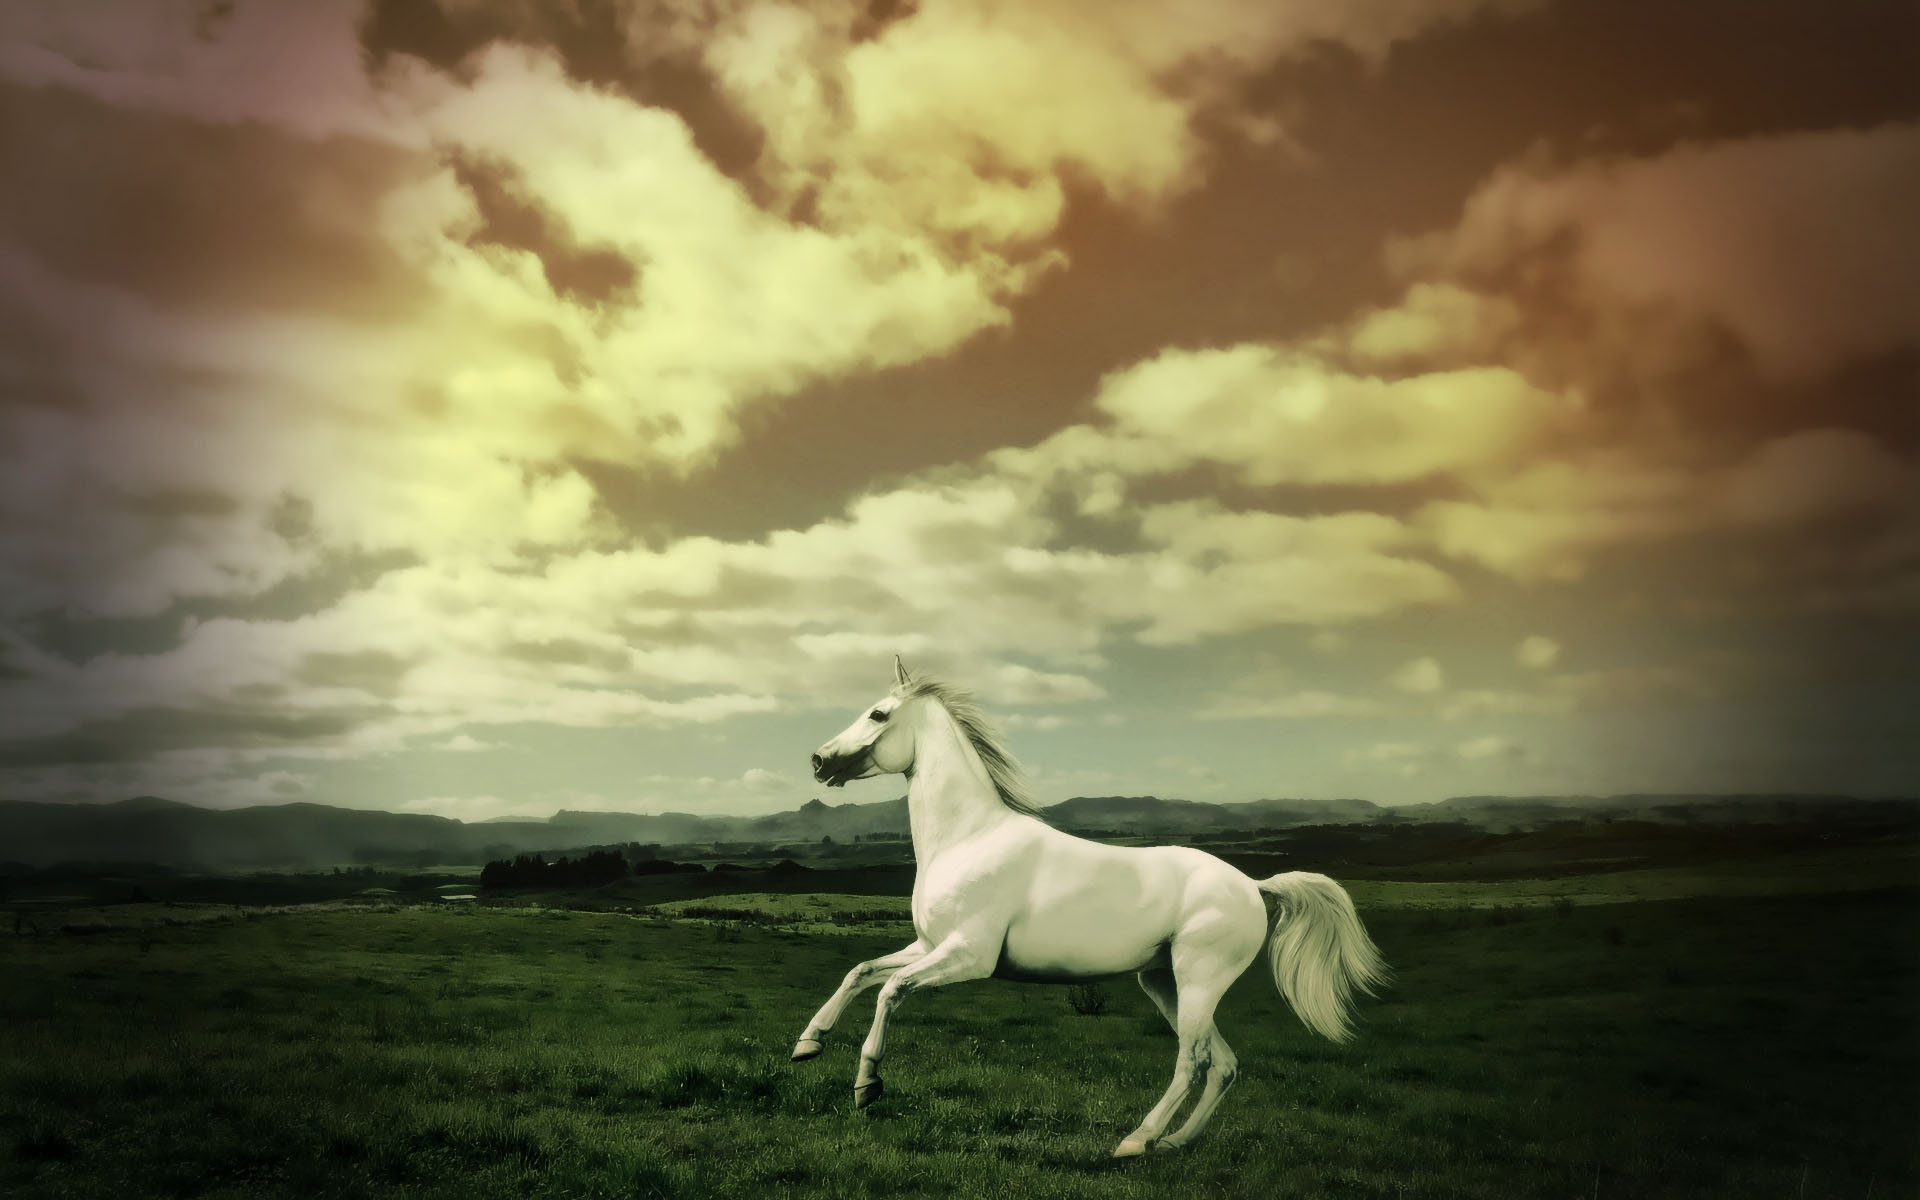 running clock wallpaper for desktop,sky,horse,white,nature,photograph